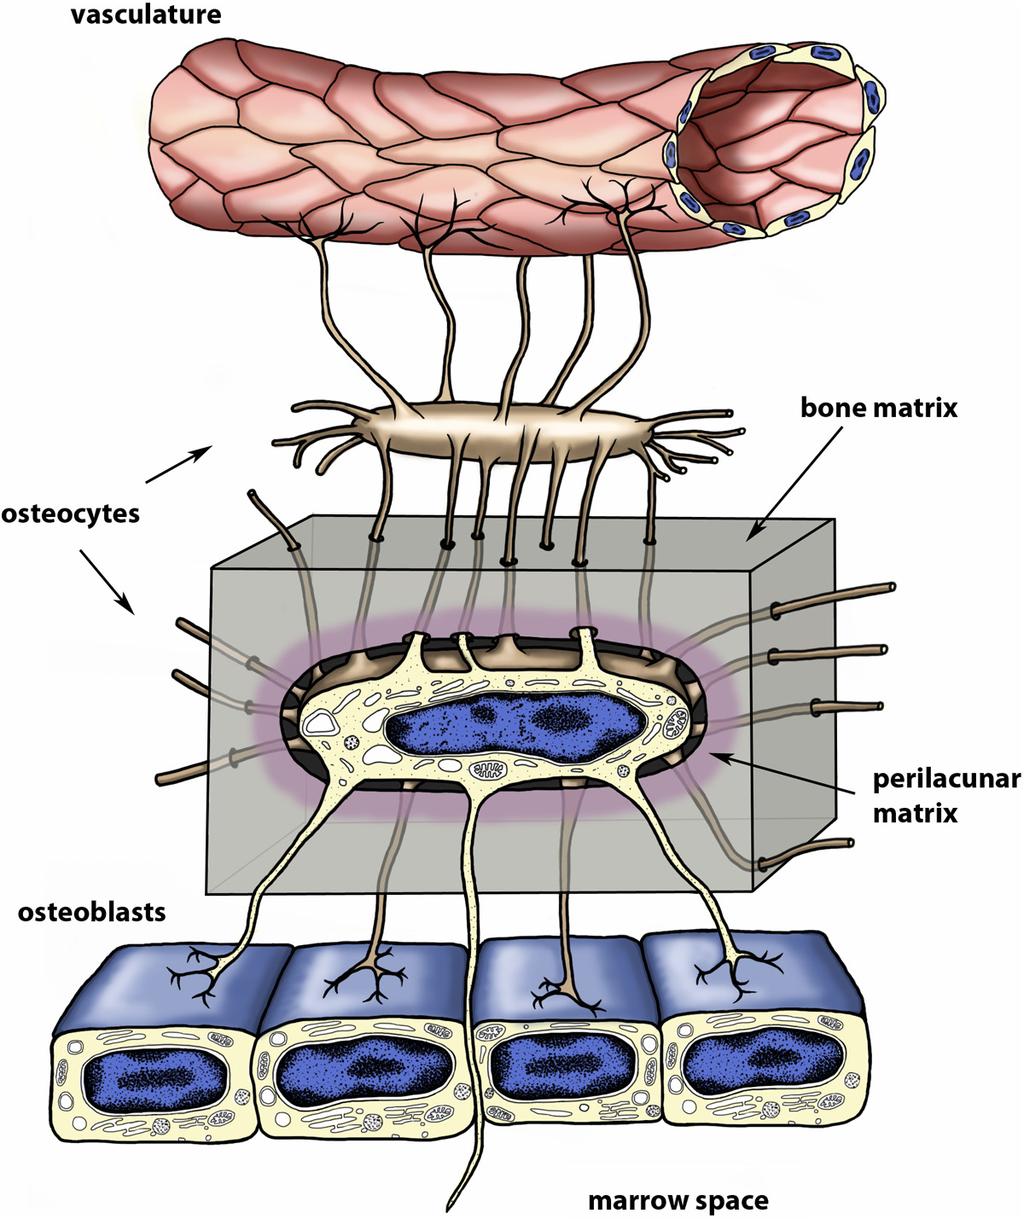 doi: 10.1210/er.2012-1026 edrv.endojournals.org 659 Figure 1. Figure 1. The osteocyte.